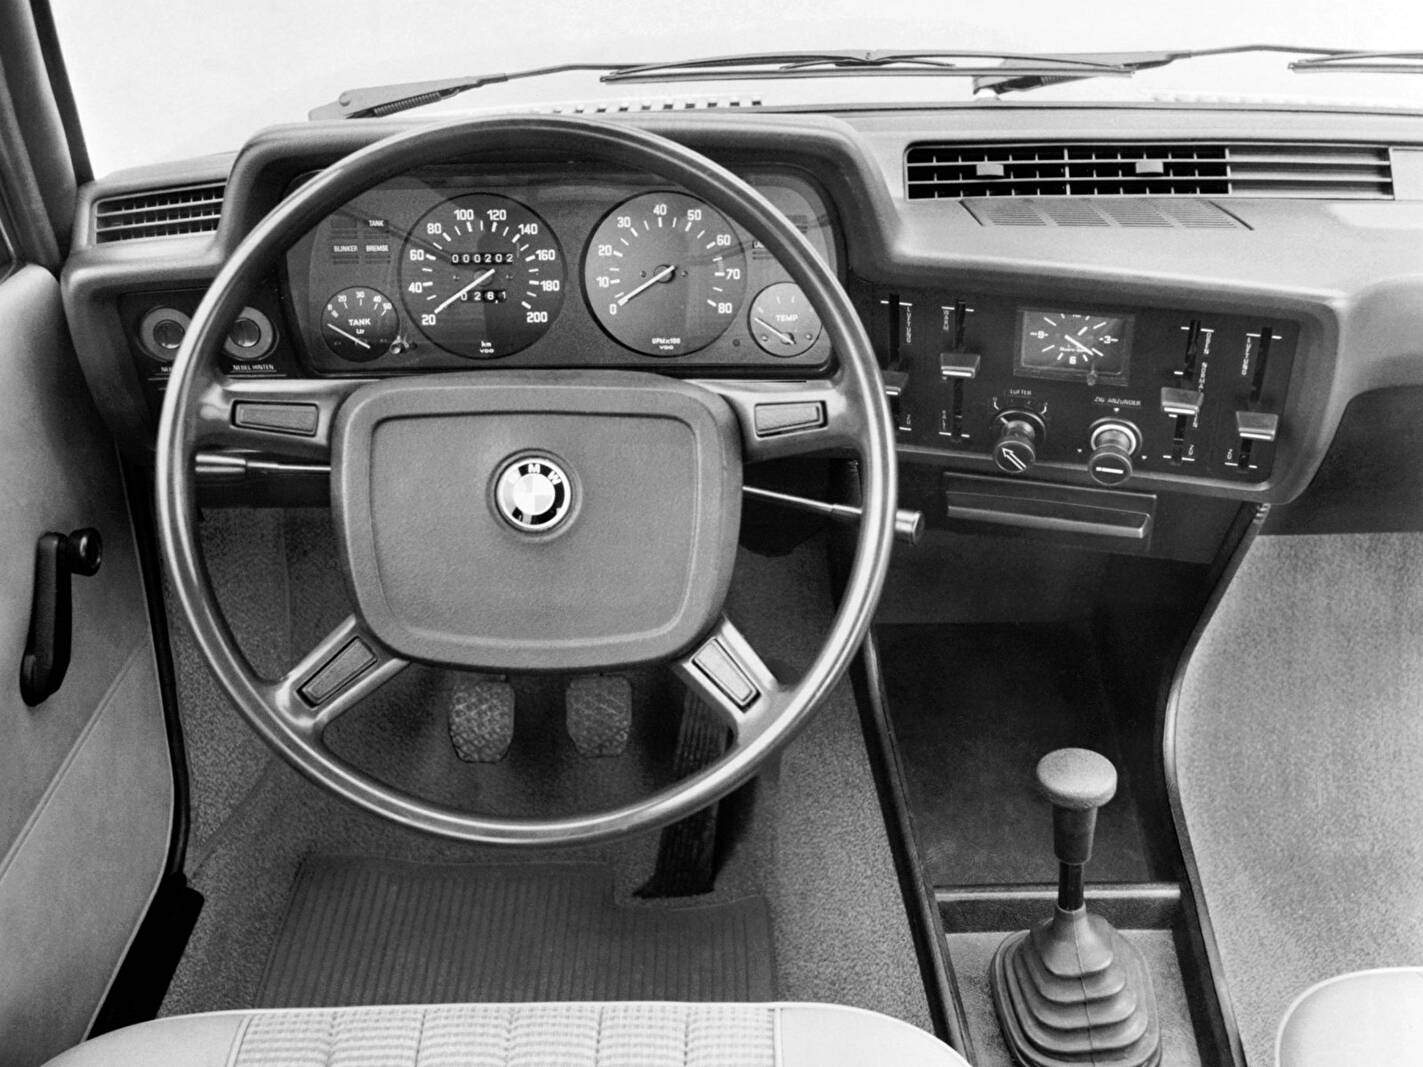 BMW 315 (E21) (1981-1983),  ajouté par fox58